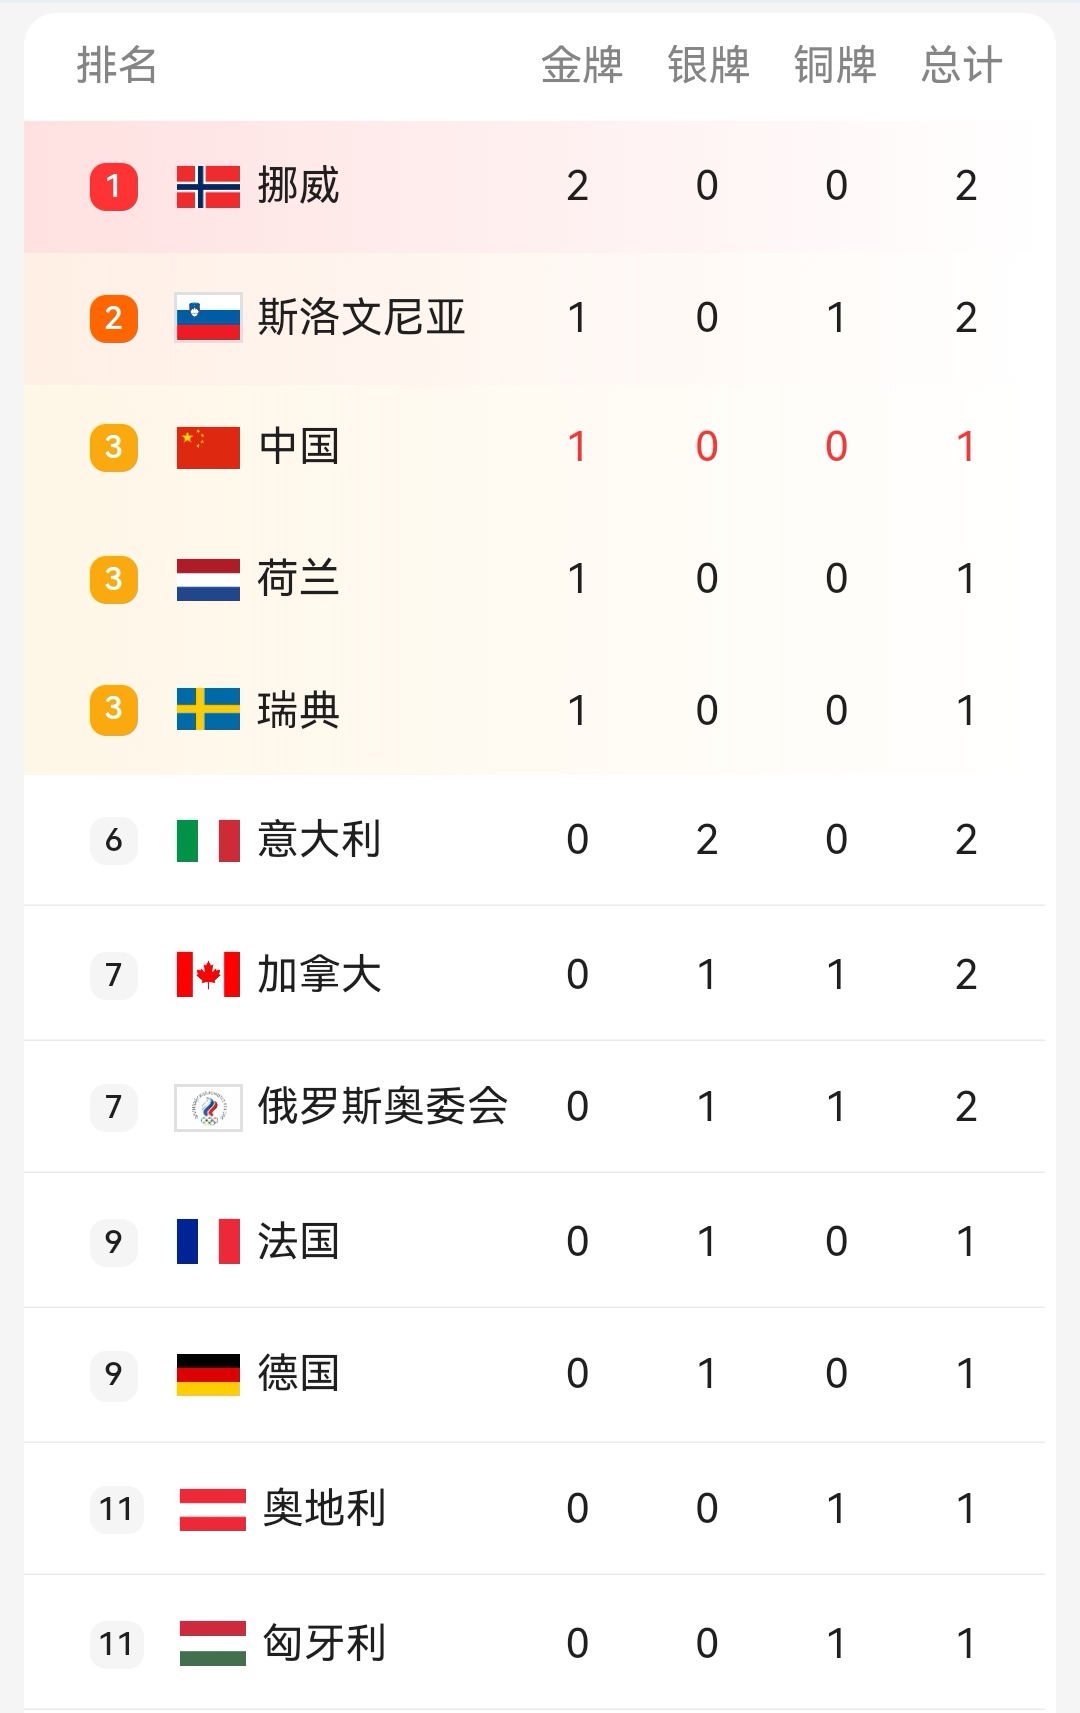 北京冬奥会的奖牌榜图片